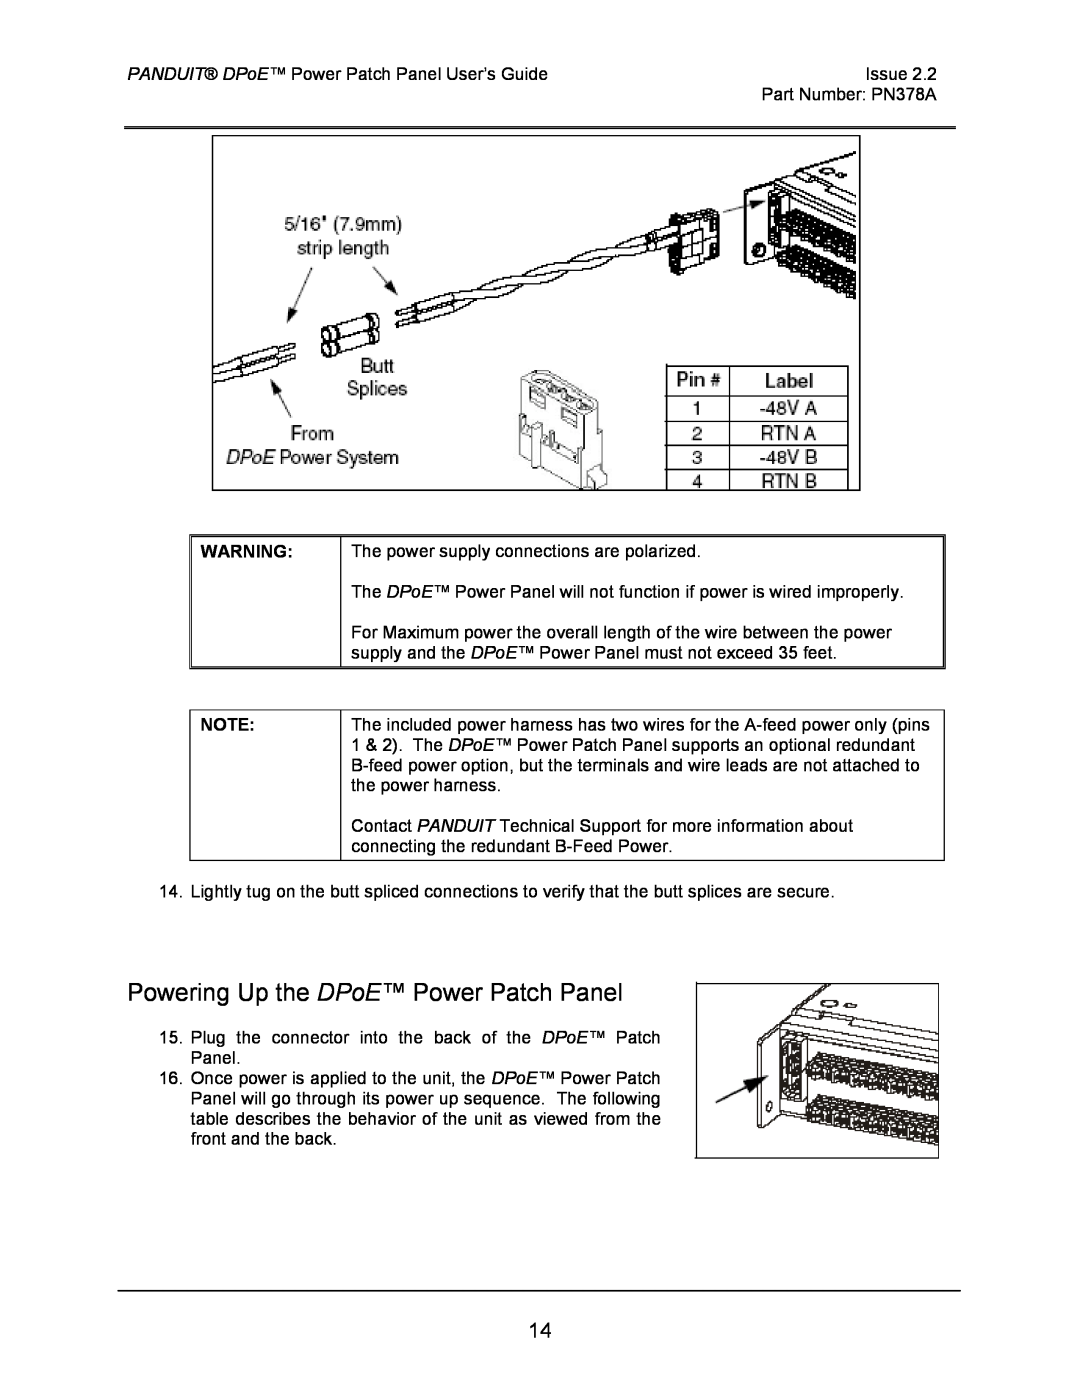 Panduit DPOE24U1XY, DPOE24S1XY, DPOE12U1XY manual Powering Up the DPoE Power Patch Panel 